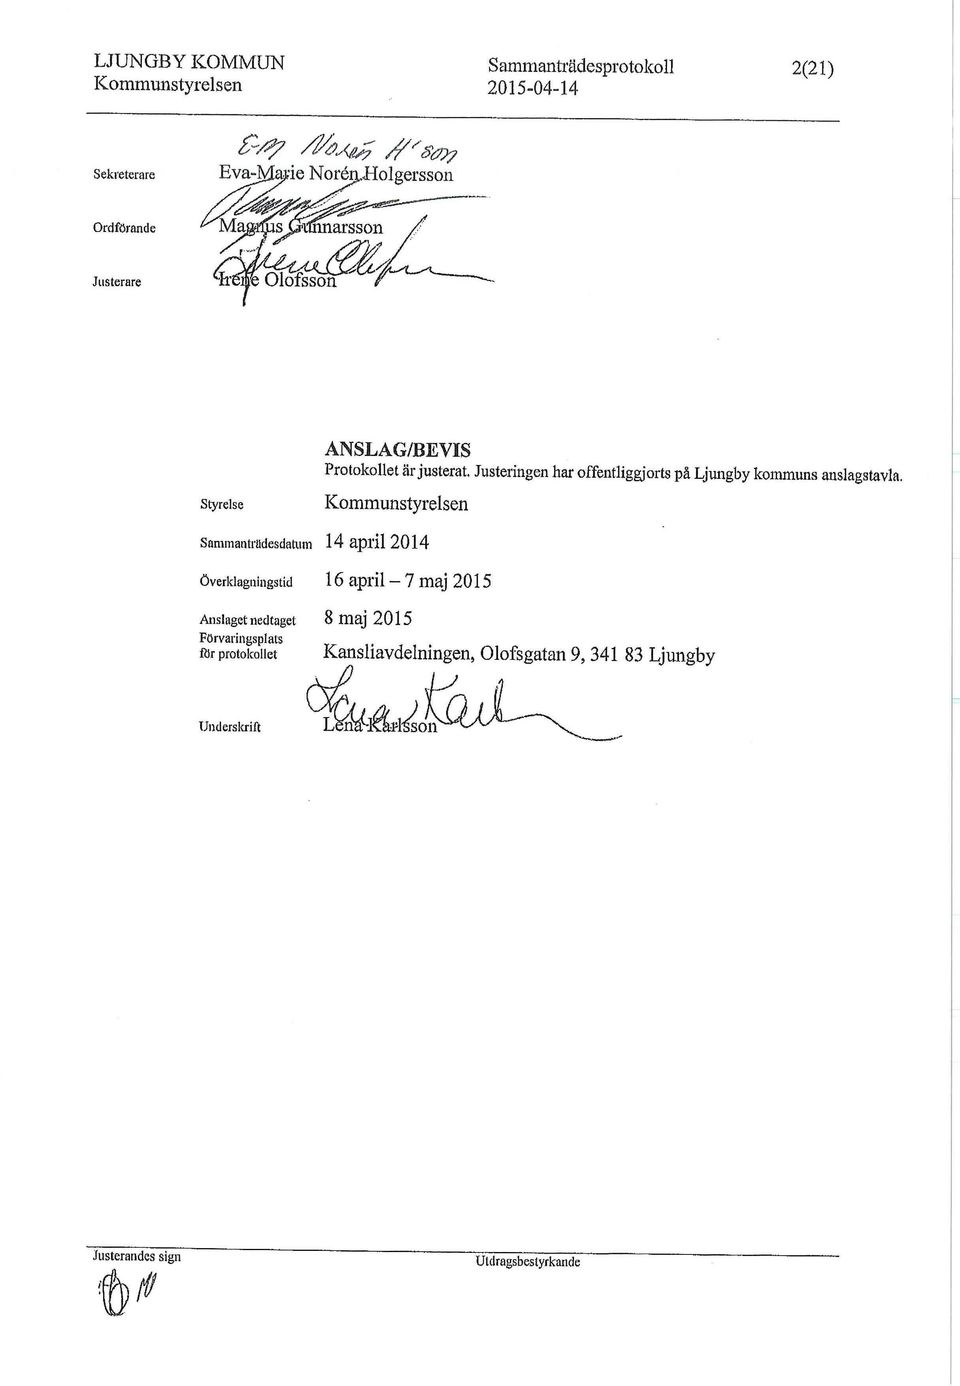 Justeringen har offentliggjorts på Ljungby kommuns anslagstavla.